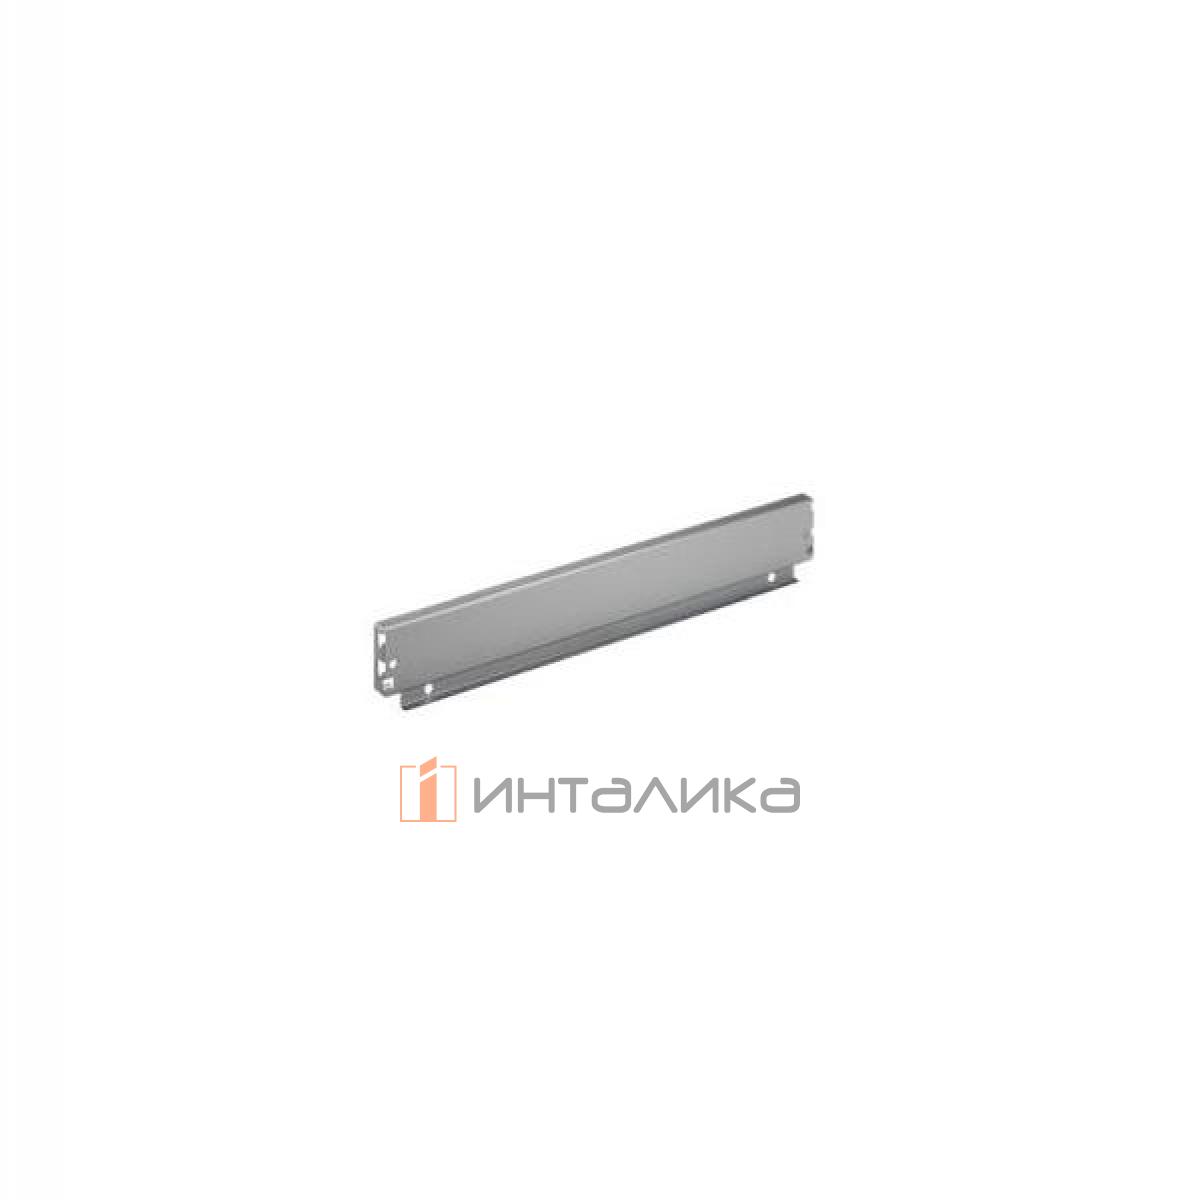 Задняя стенка HETTICH InnoTech/InnoTech Atira, высота 70мм, H1200 мм, сталь, цвет серебристый, (V20)